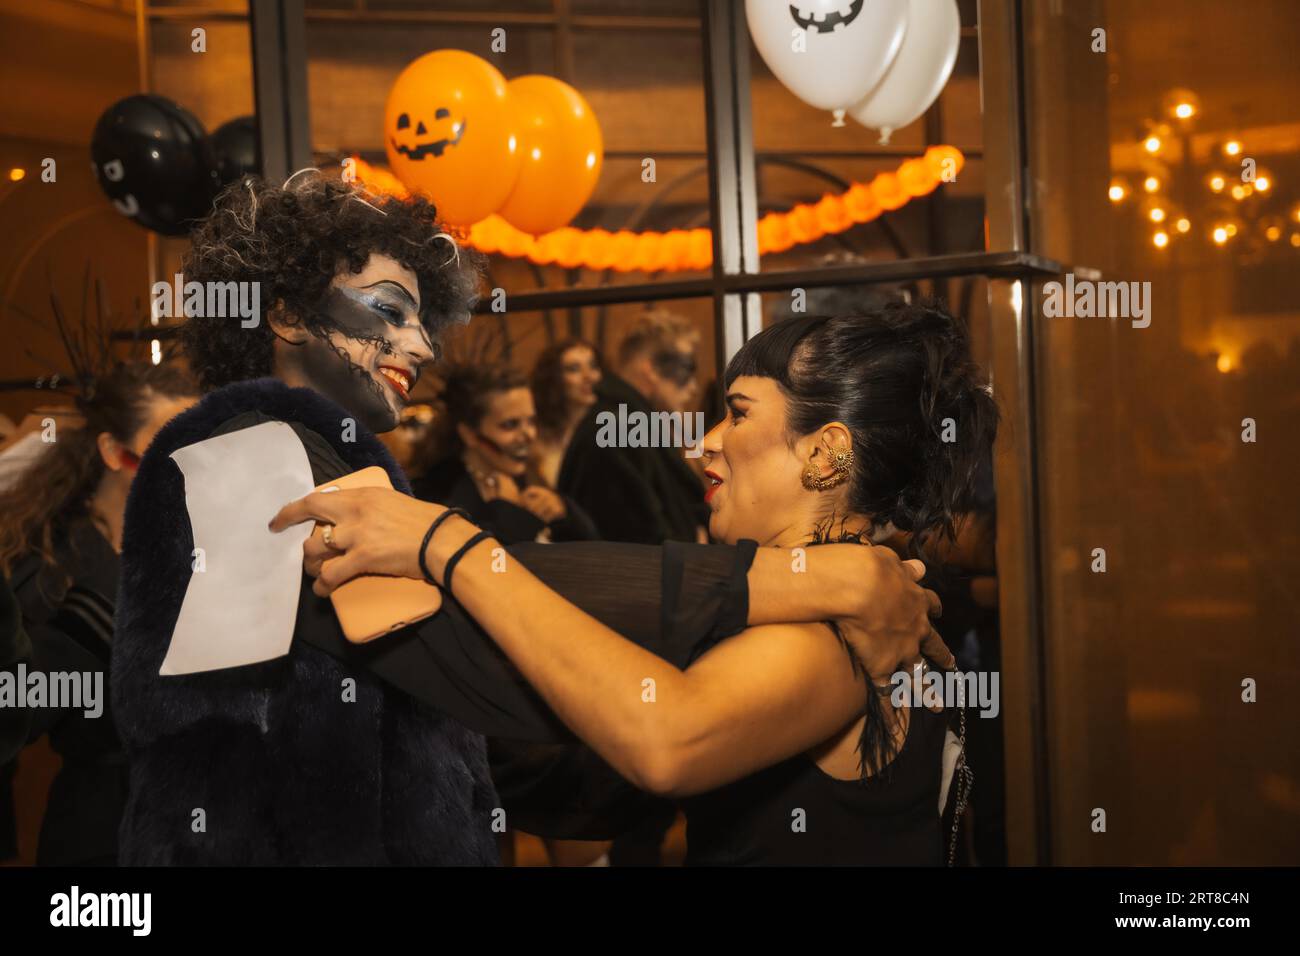 Fiesta de Halloween con amigos en una discoteca, dos amigos se saludan en la fiesta Foto de stock